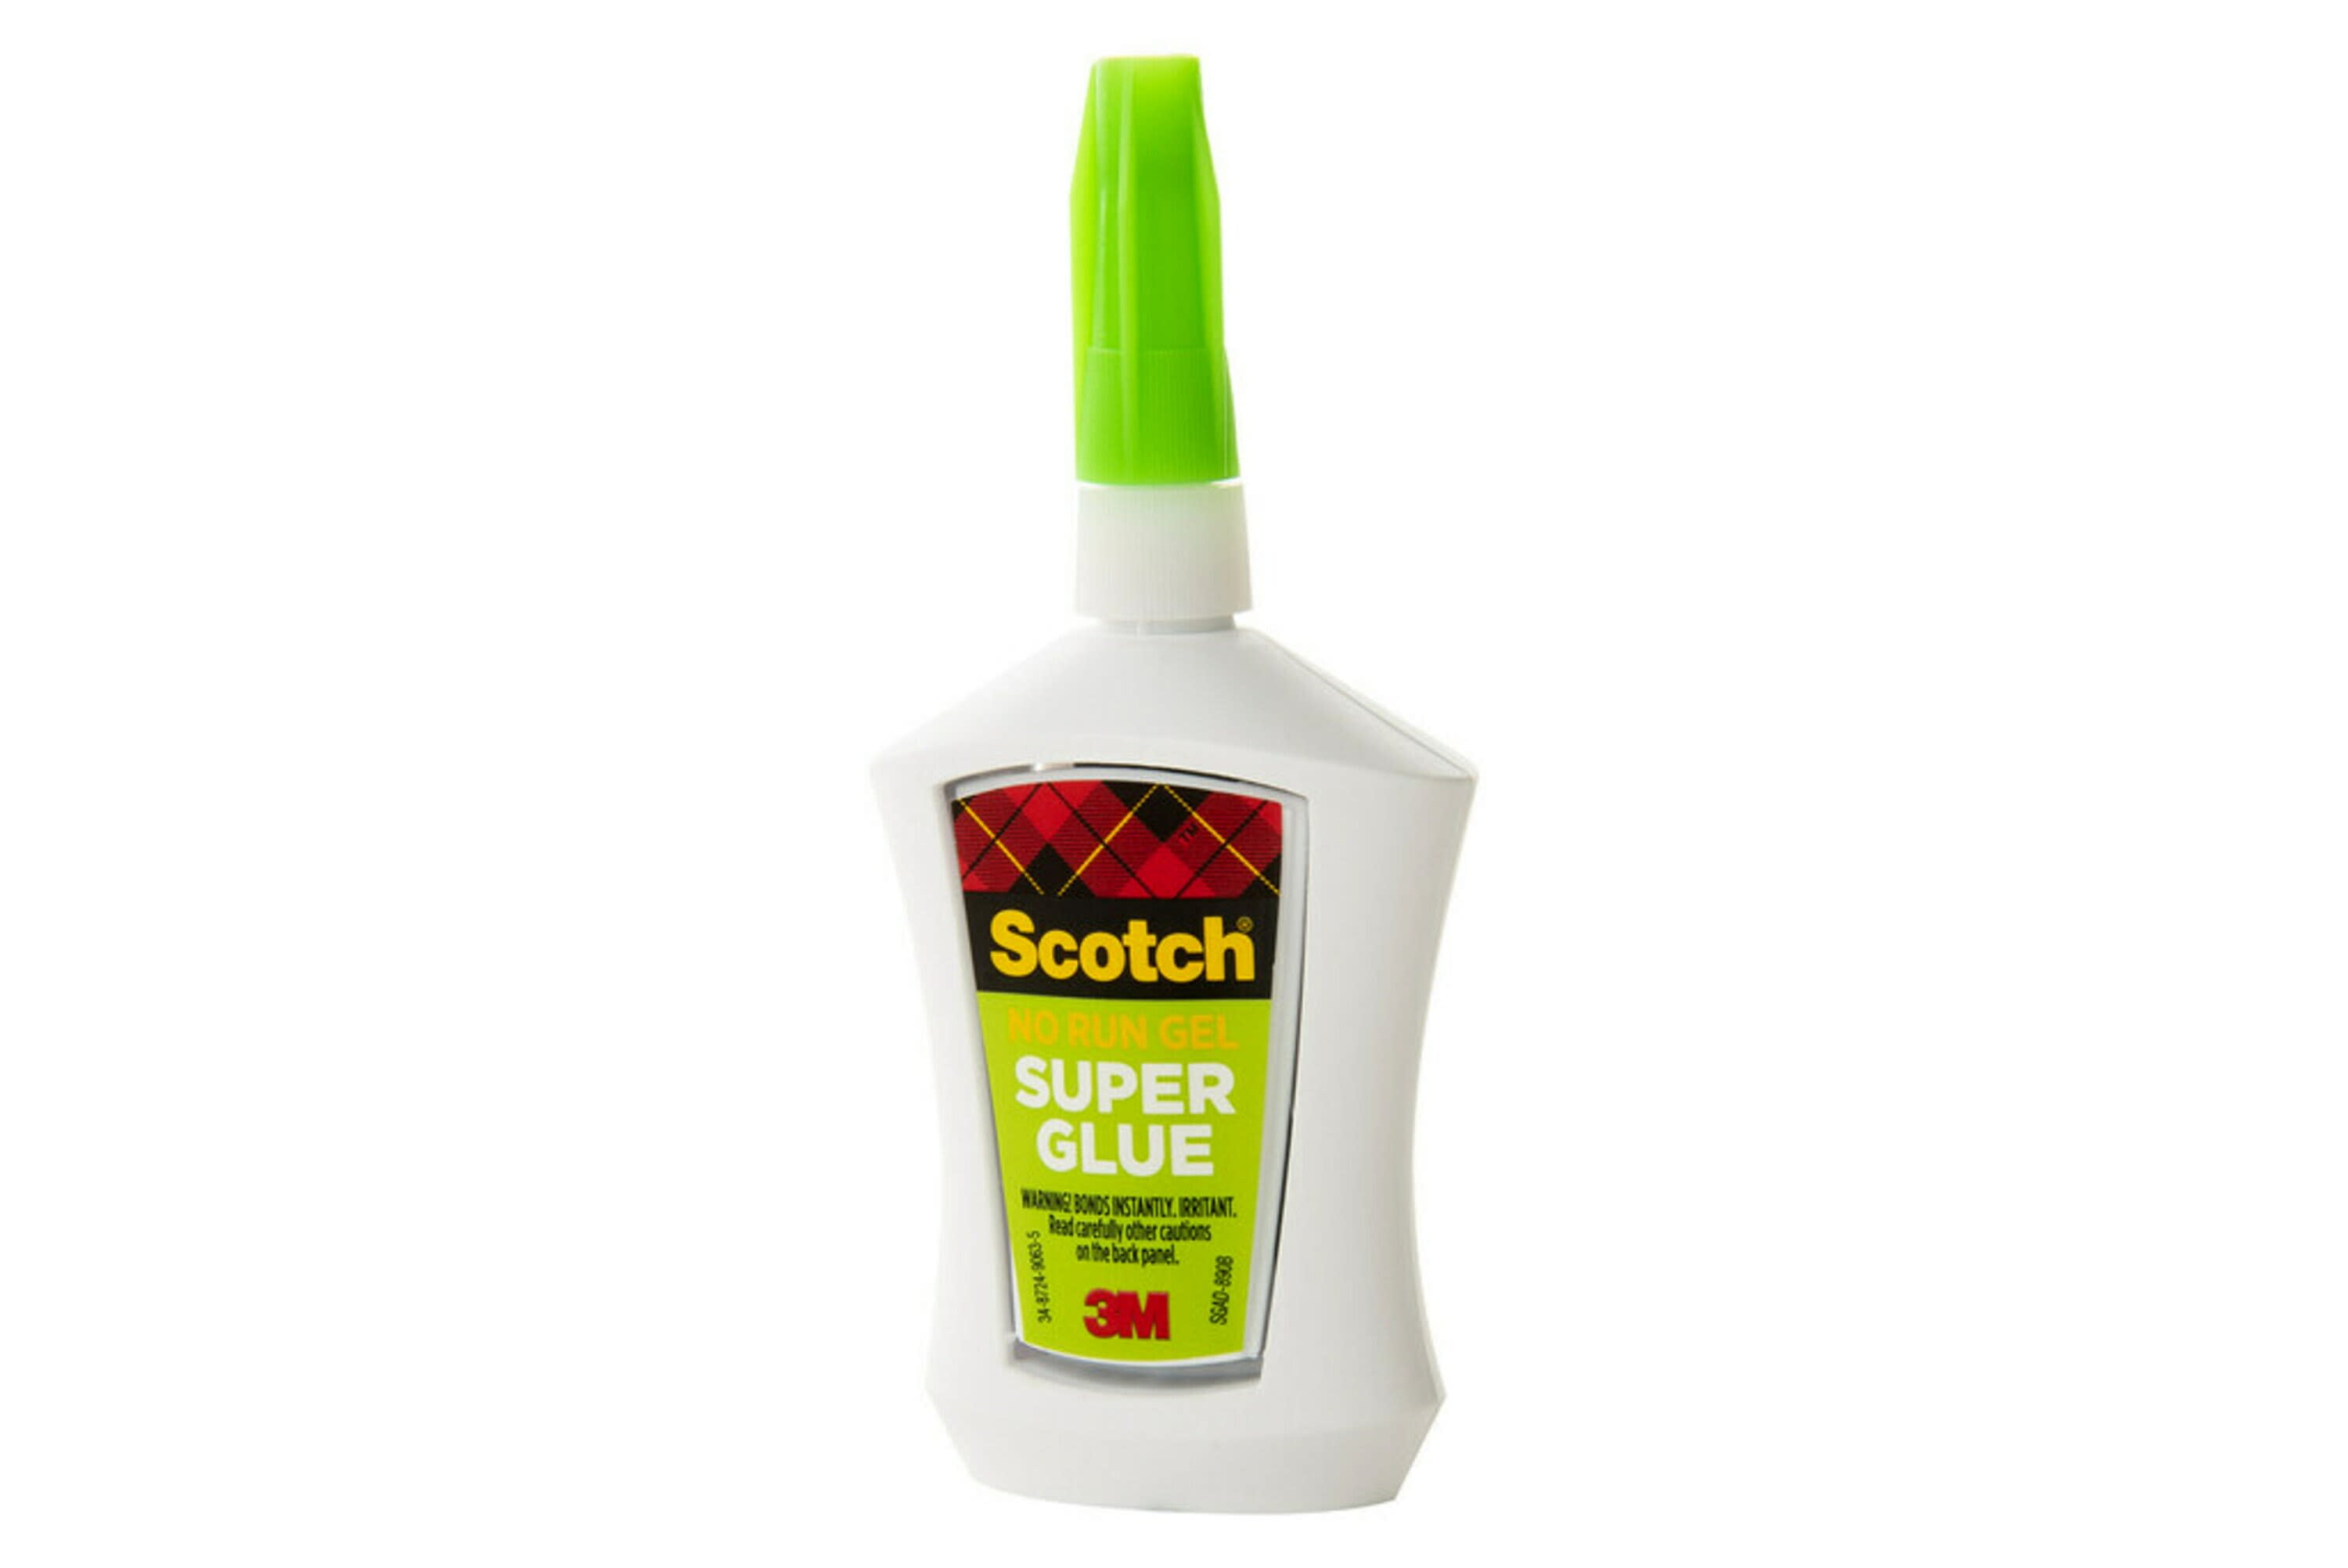 Scotch Super Glue @ FindTape